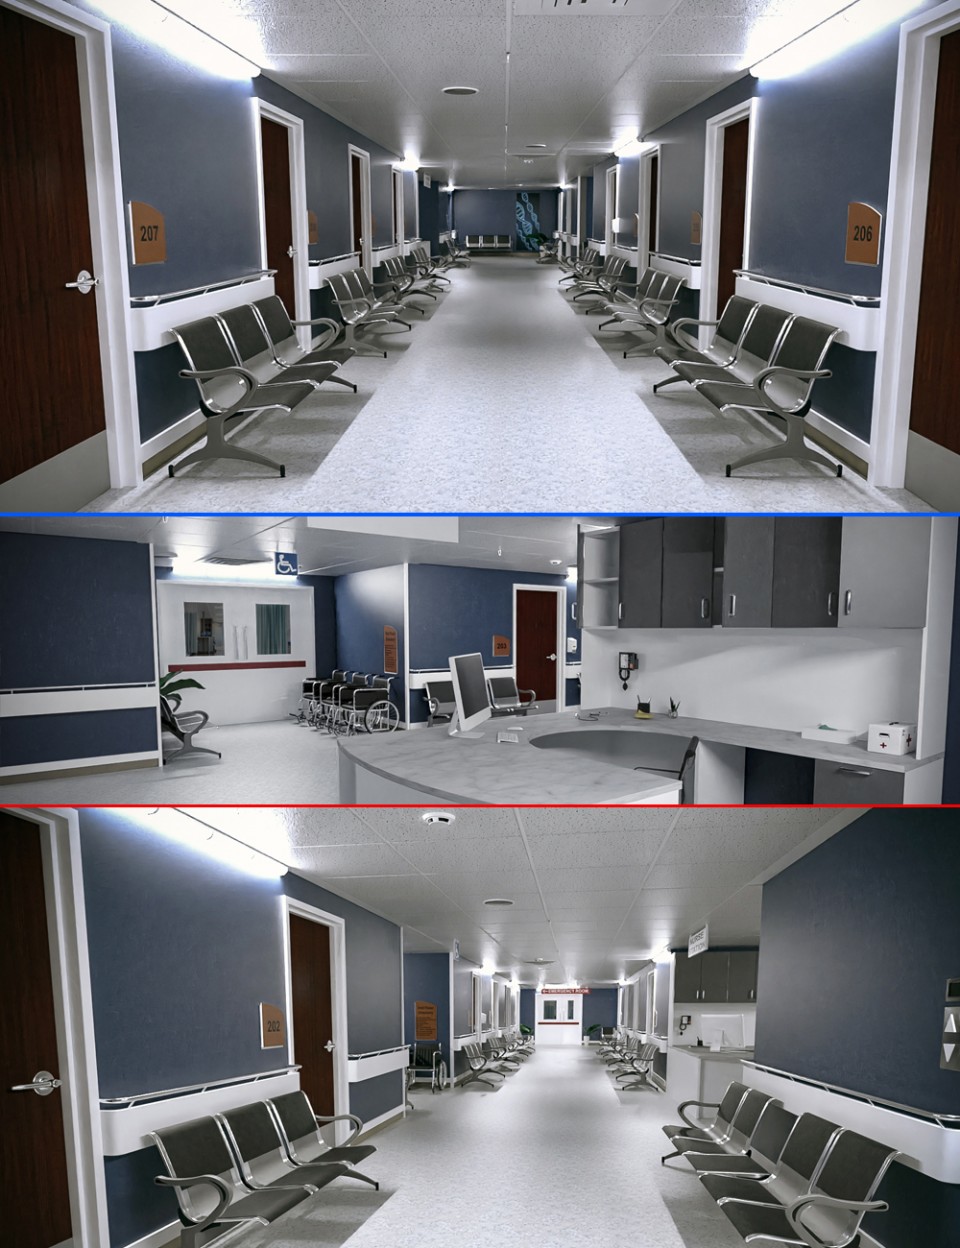 TS Hospital Corridor_DAZ3D下载站